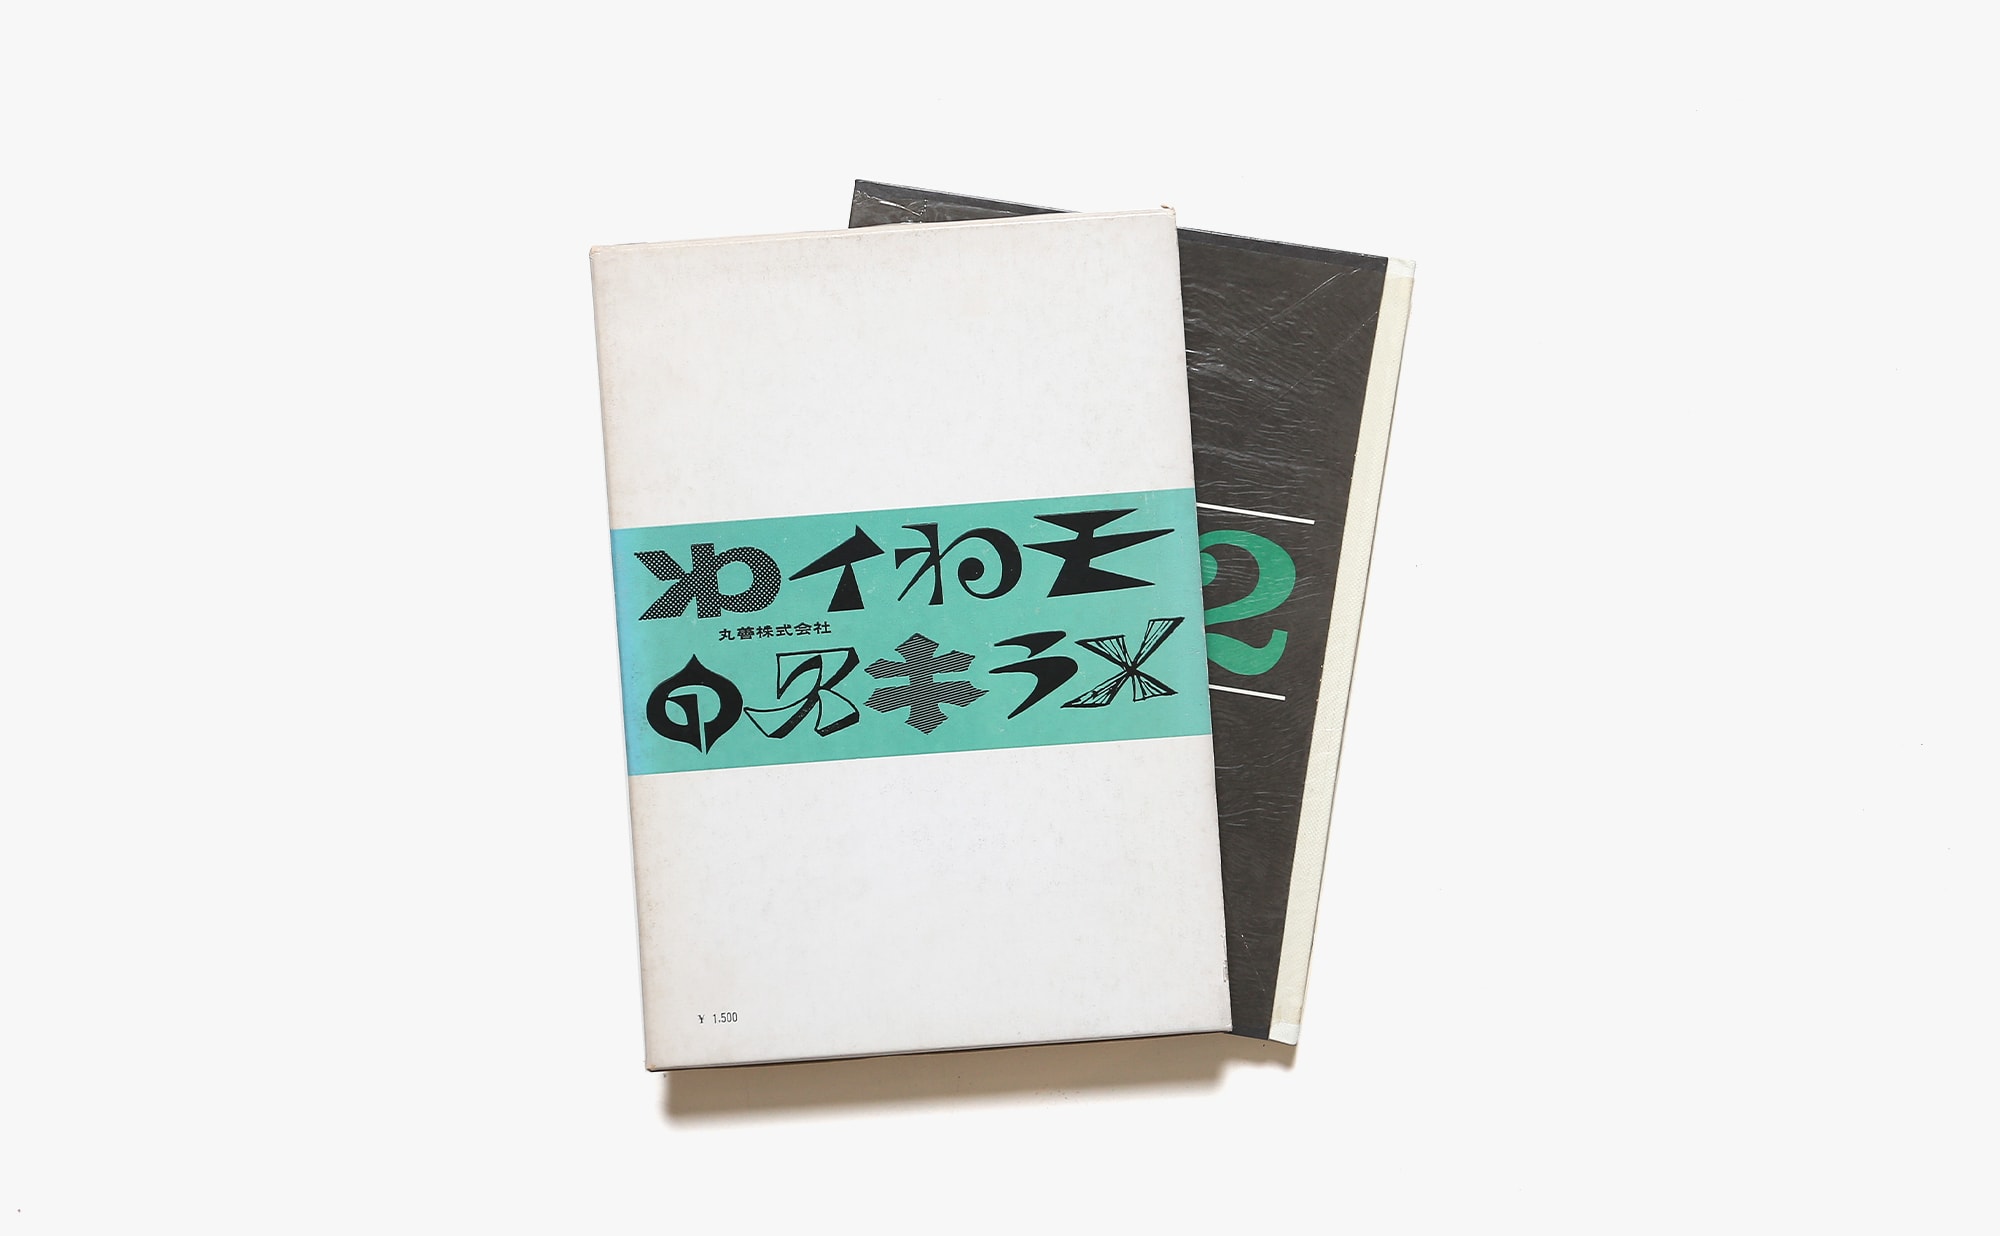 日本字デザイン2 マーク・ロゴタイプ・タイトルのデザイン | 佐藤敬之輔